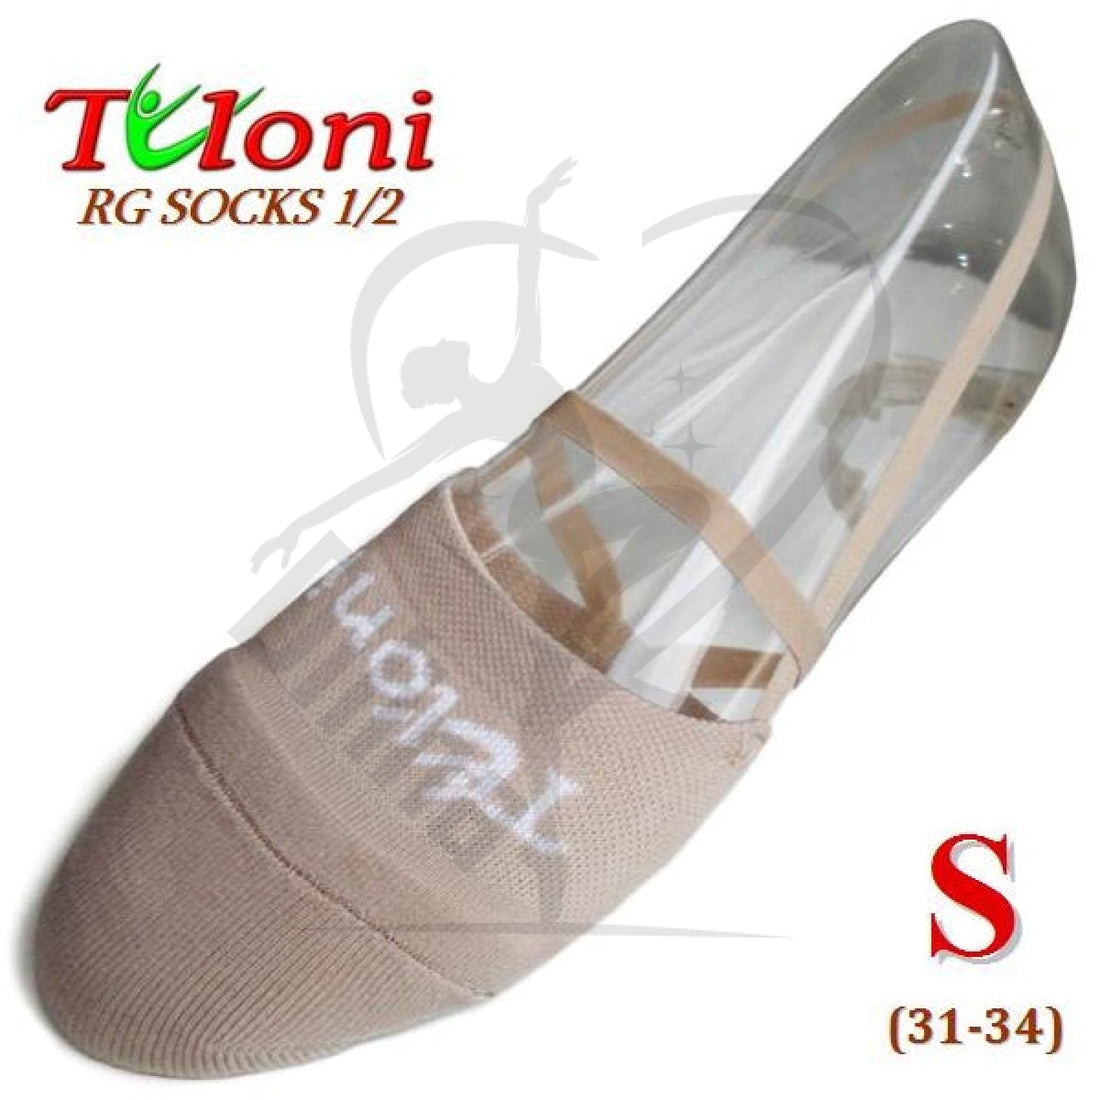 Tuloni Rg Half Shocks S (31-34) Shoes